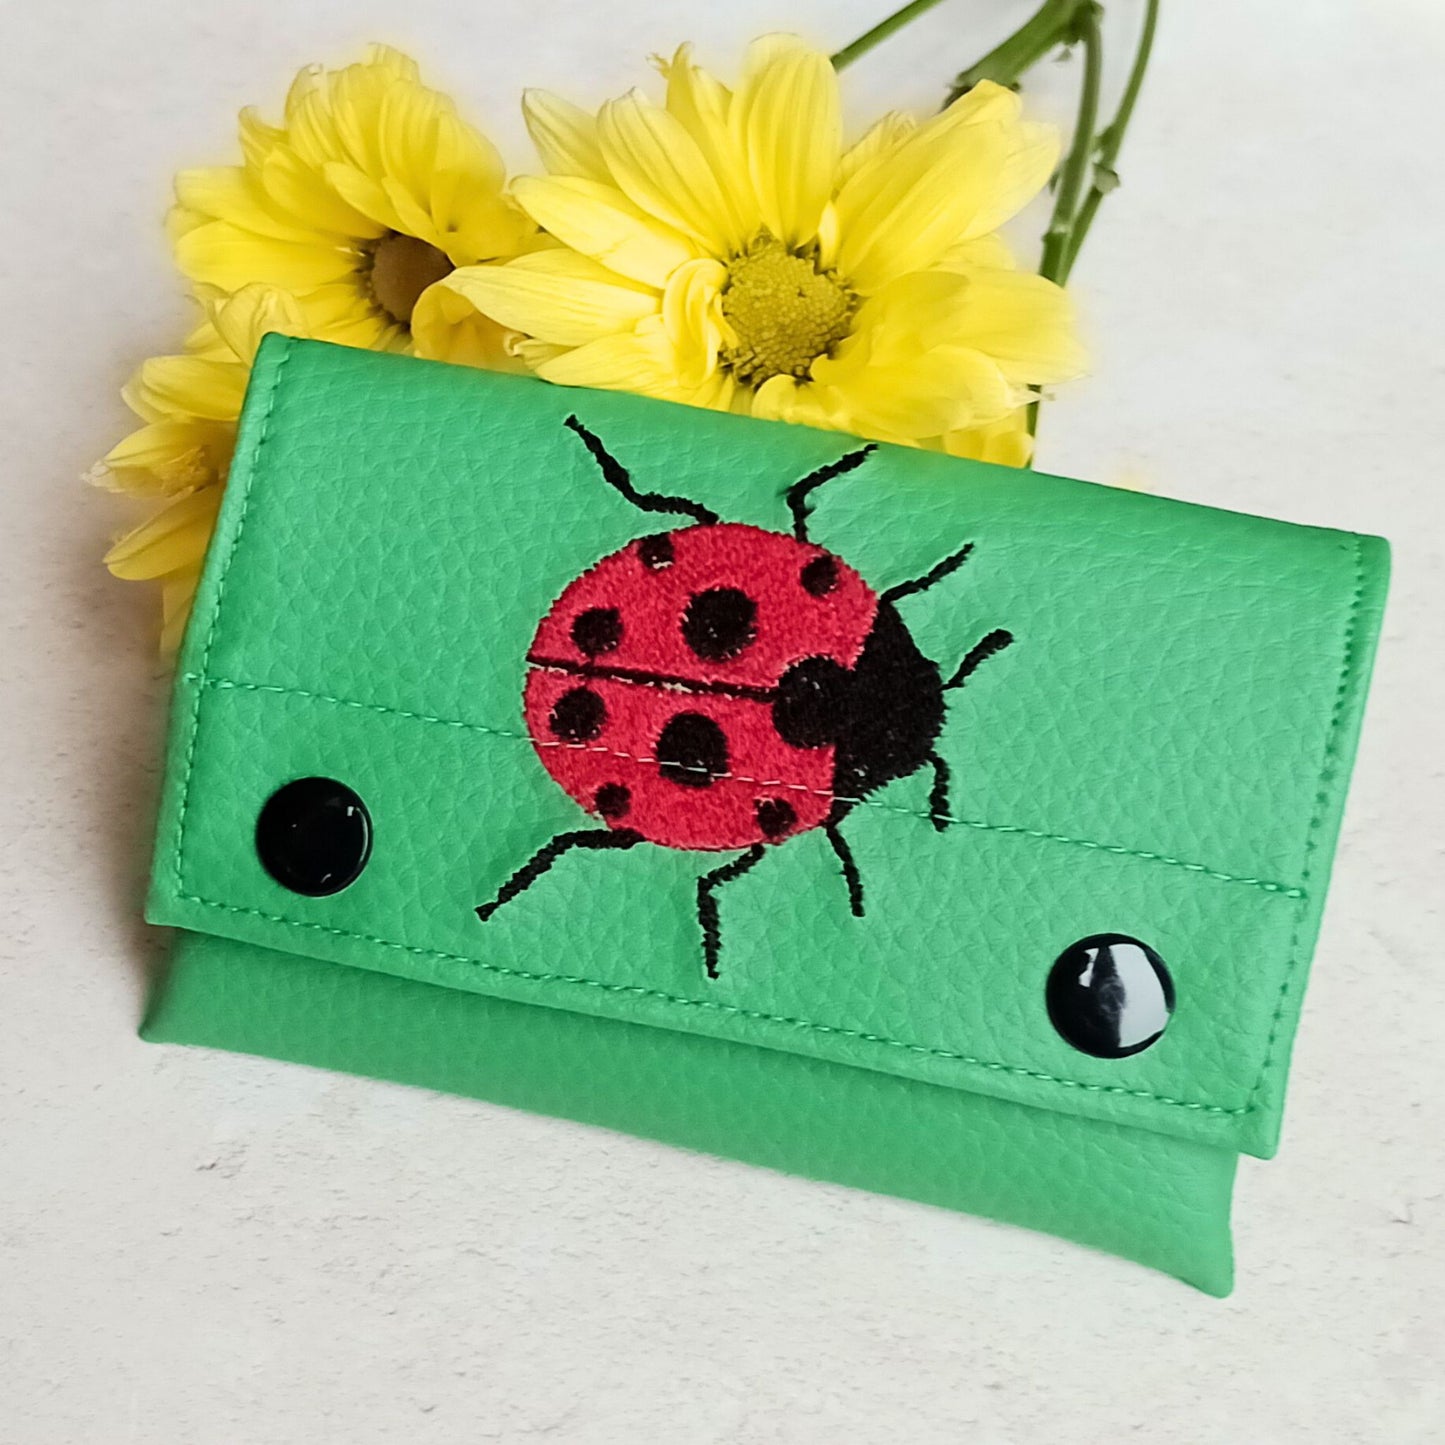 mini wallets